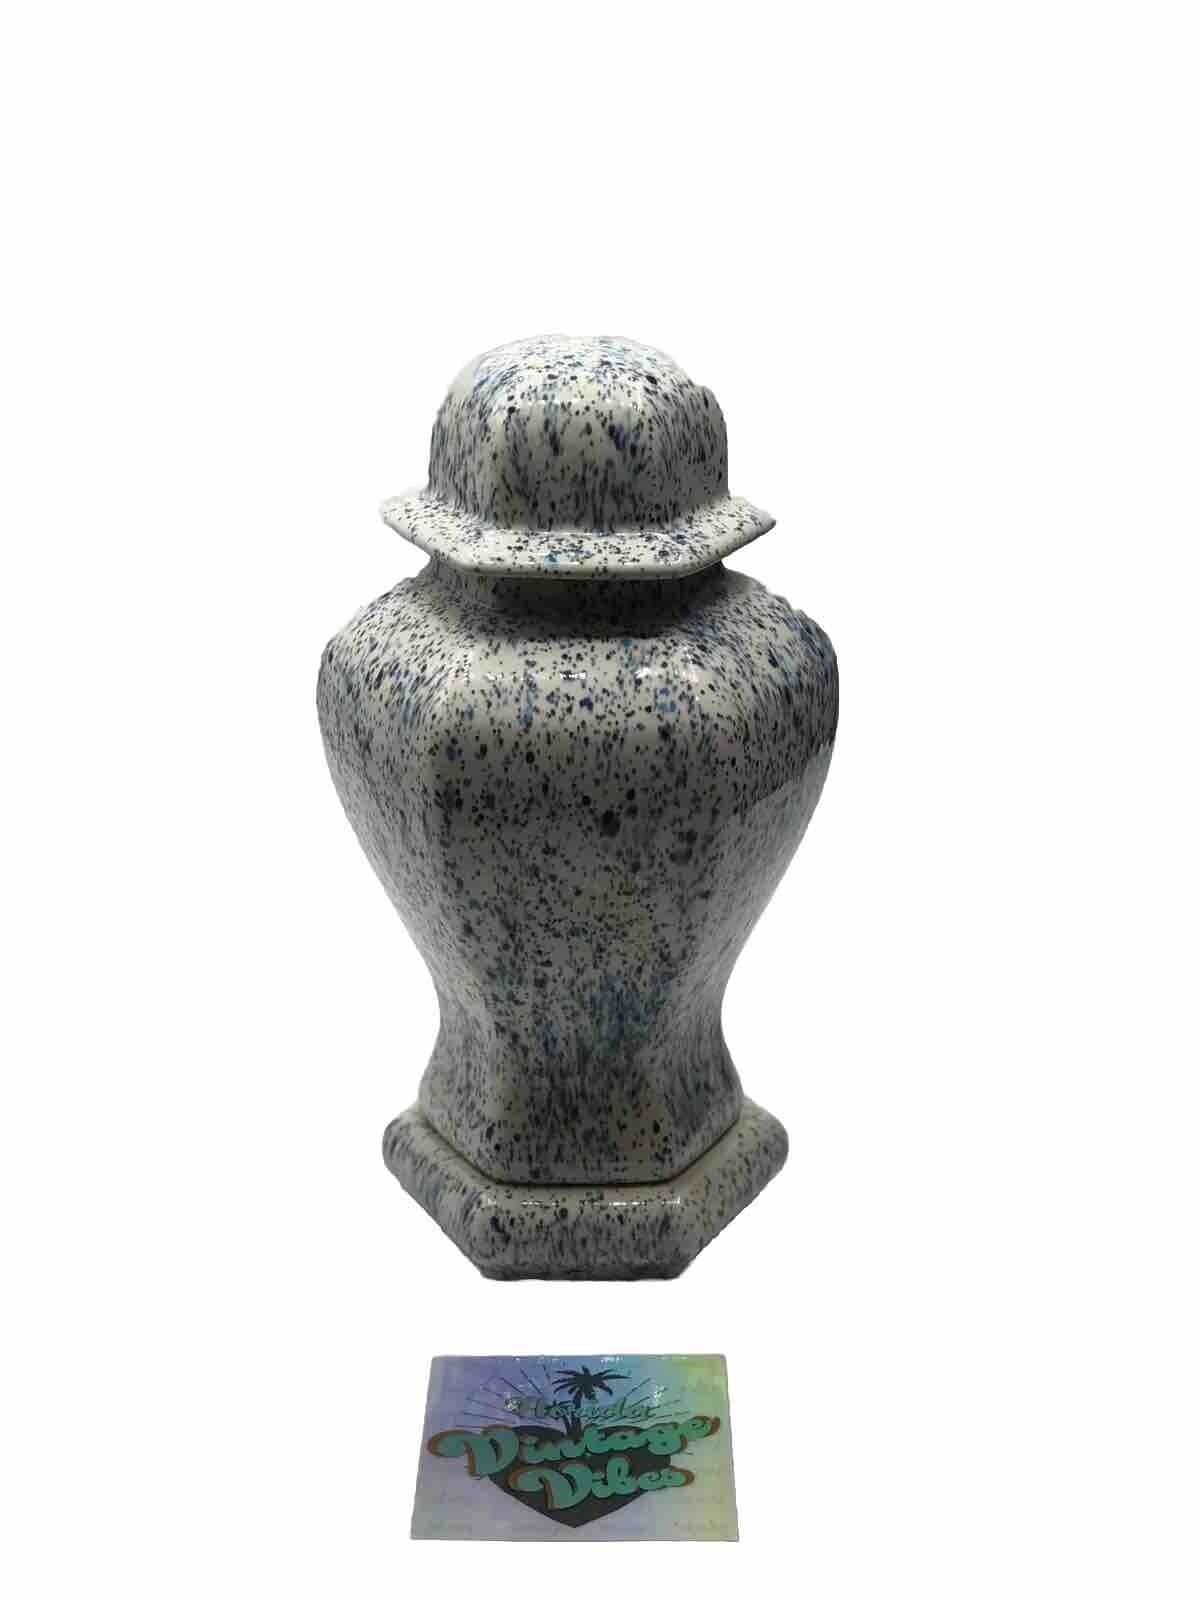 10” Ceramic Speckled Drip Glaze Ginger Jar With Pedestal & Lid / Keepsake Urn